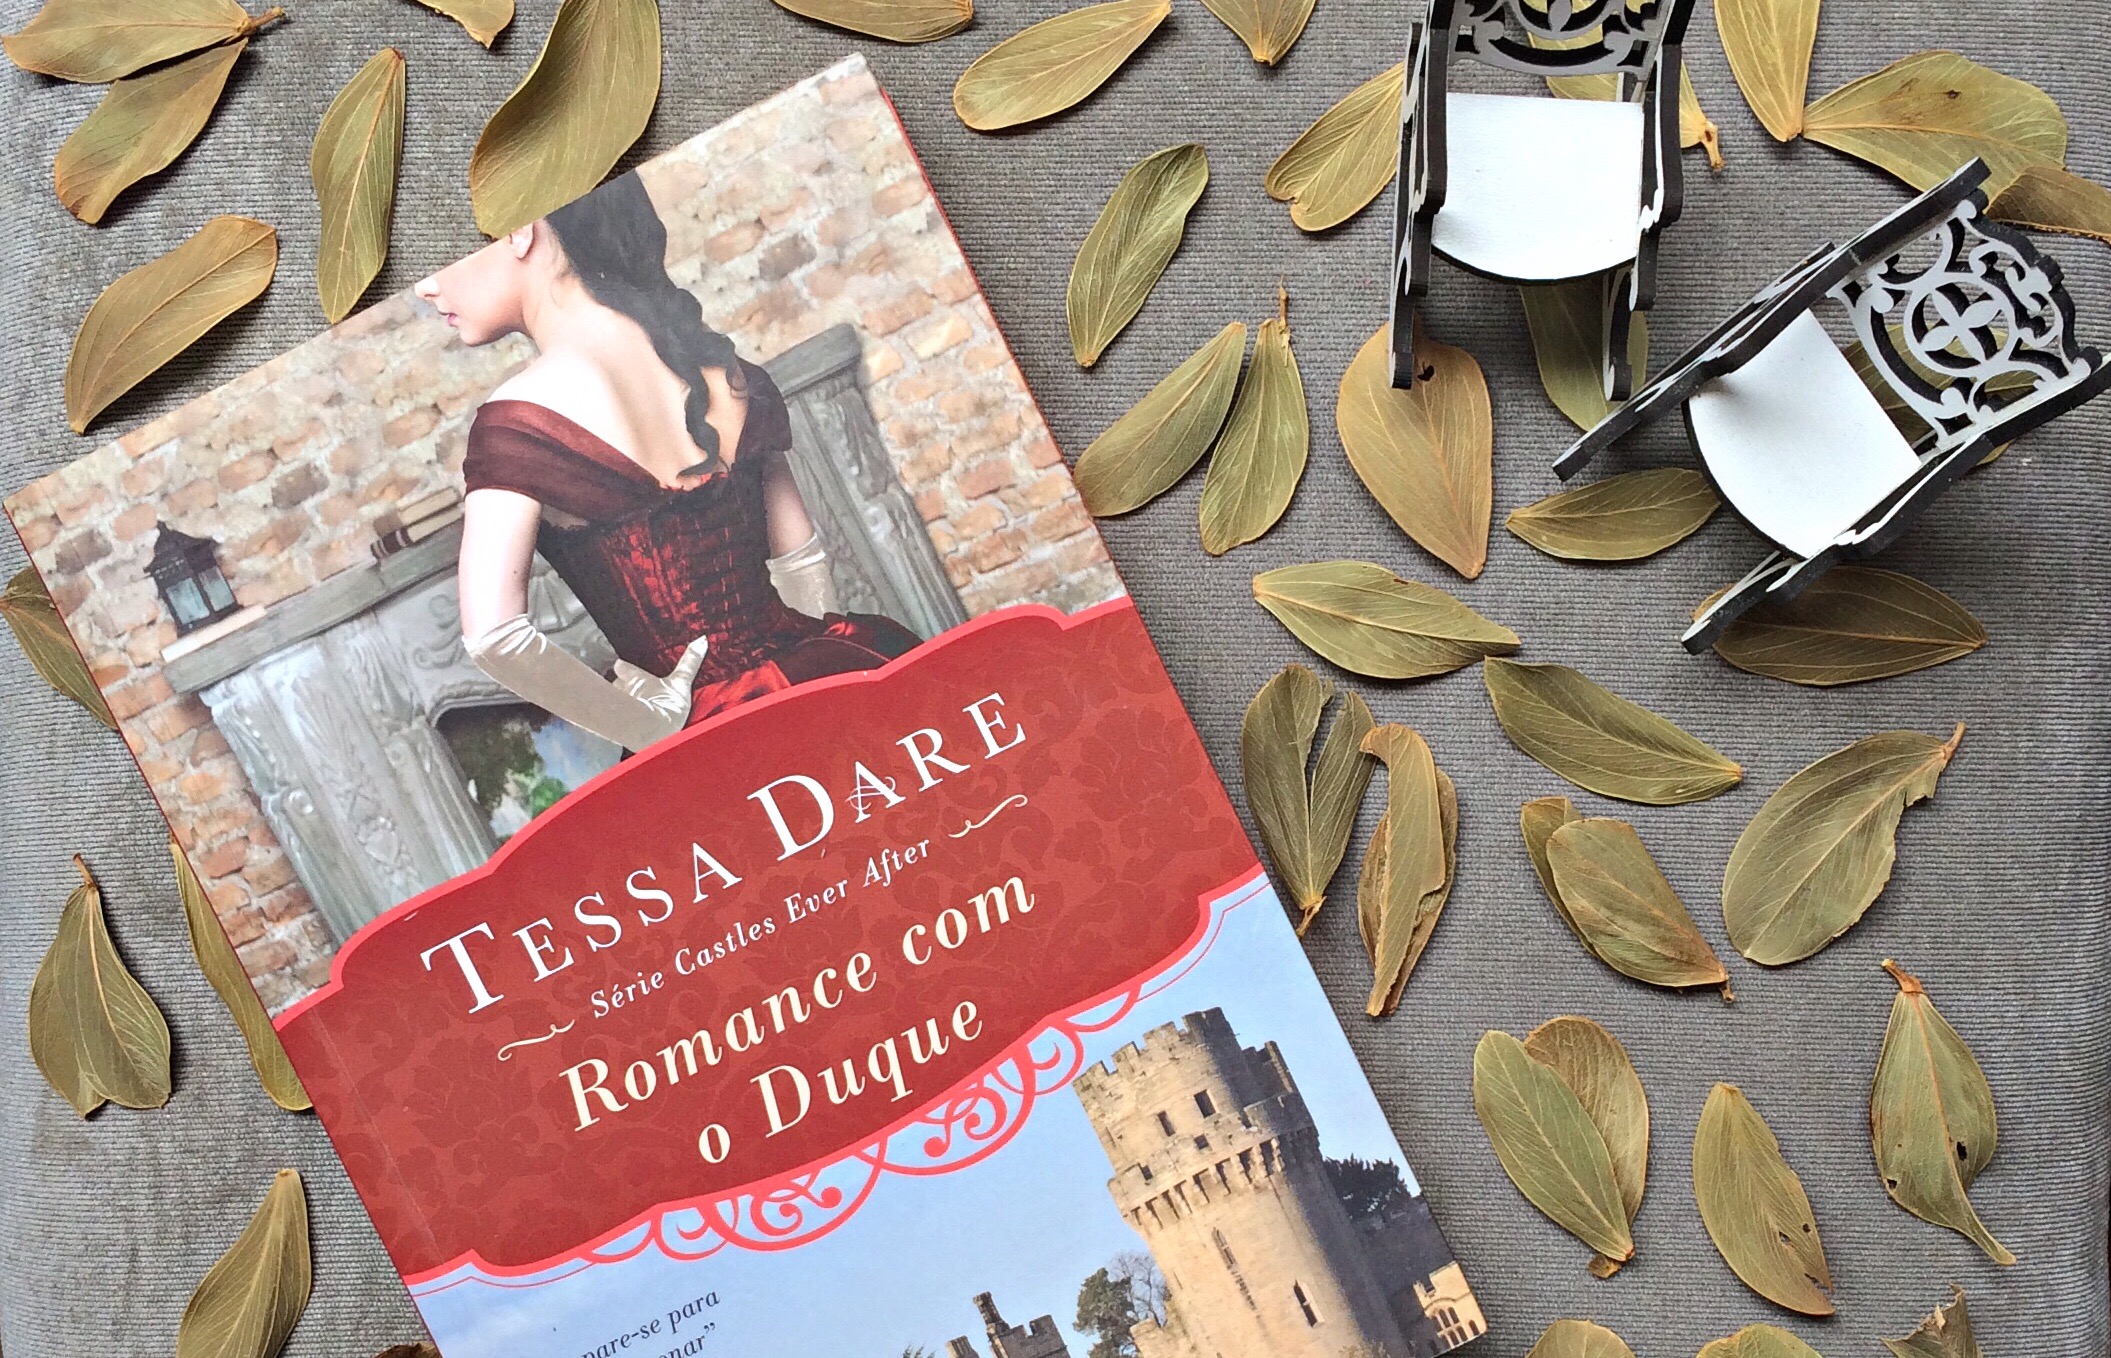 Romance com o Duque – Tessa Dare